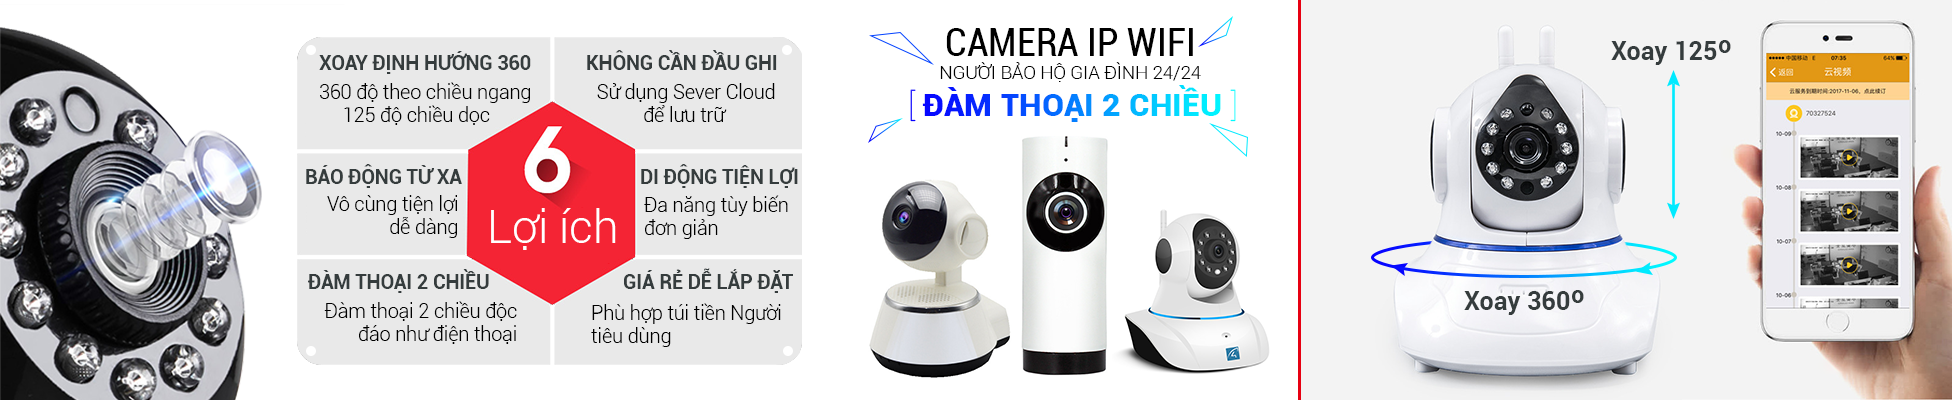 Boba.vn - Địa chỉ uy tín chuyên cung cấp các loại camera ip giá rẻ, chất lượng tại tphcm